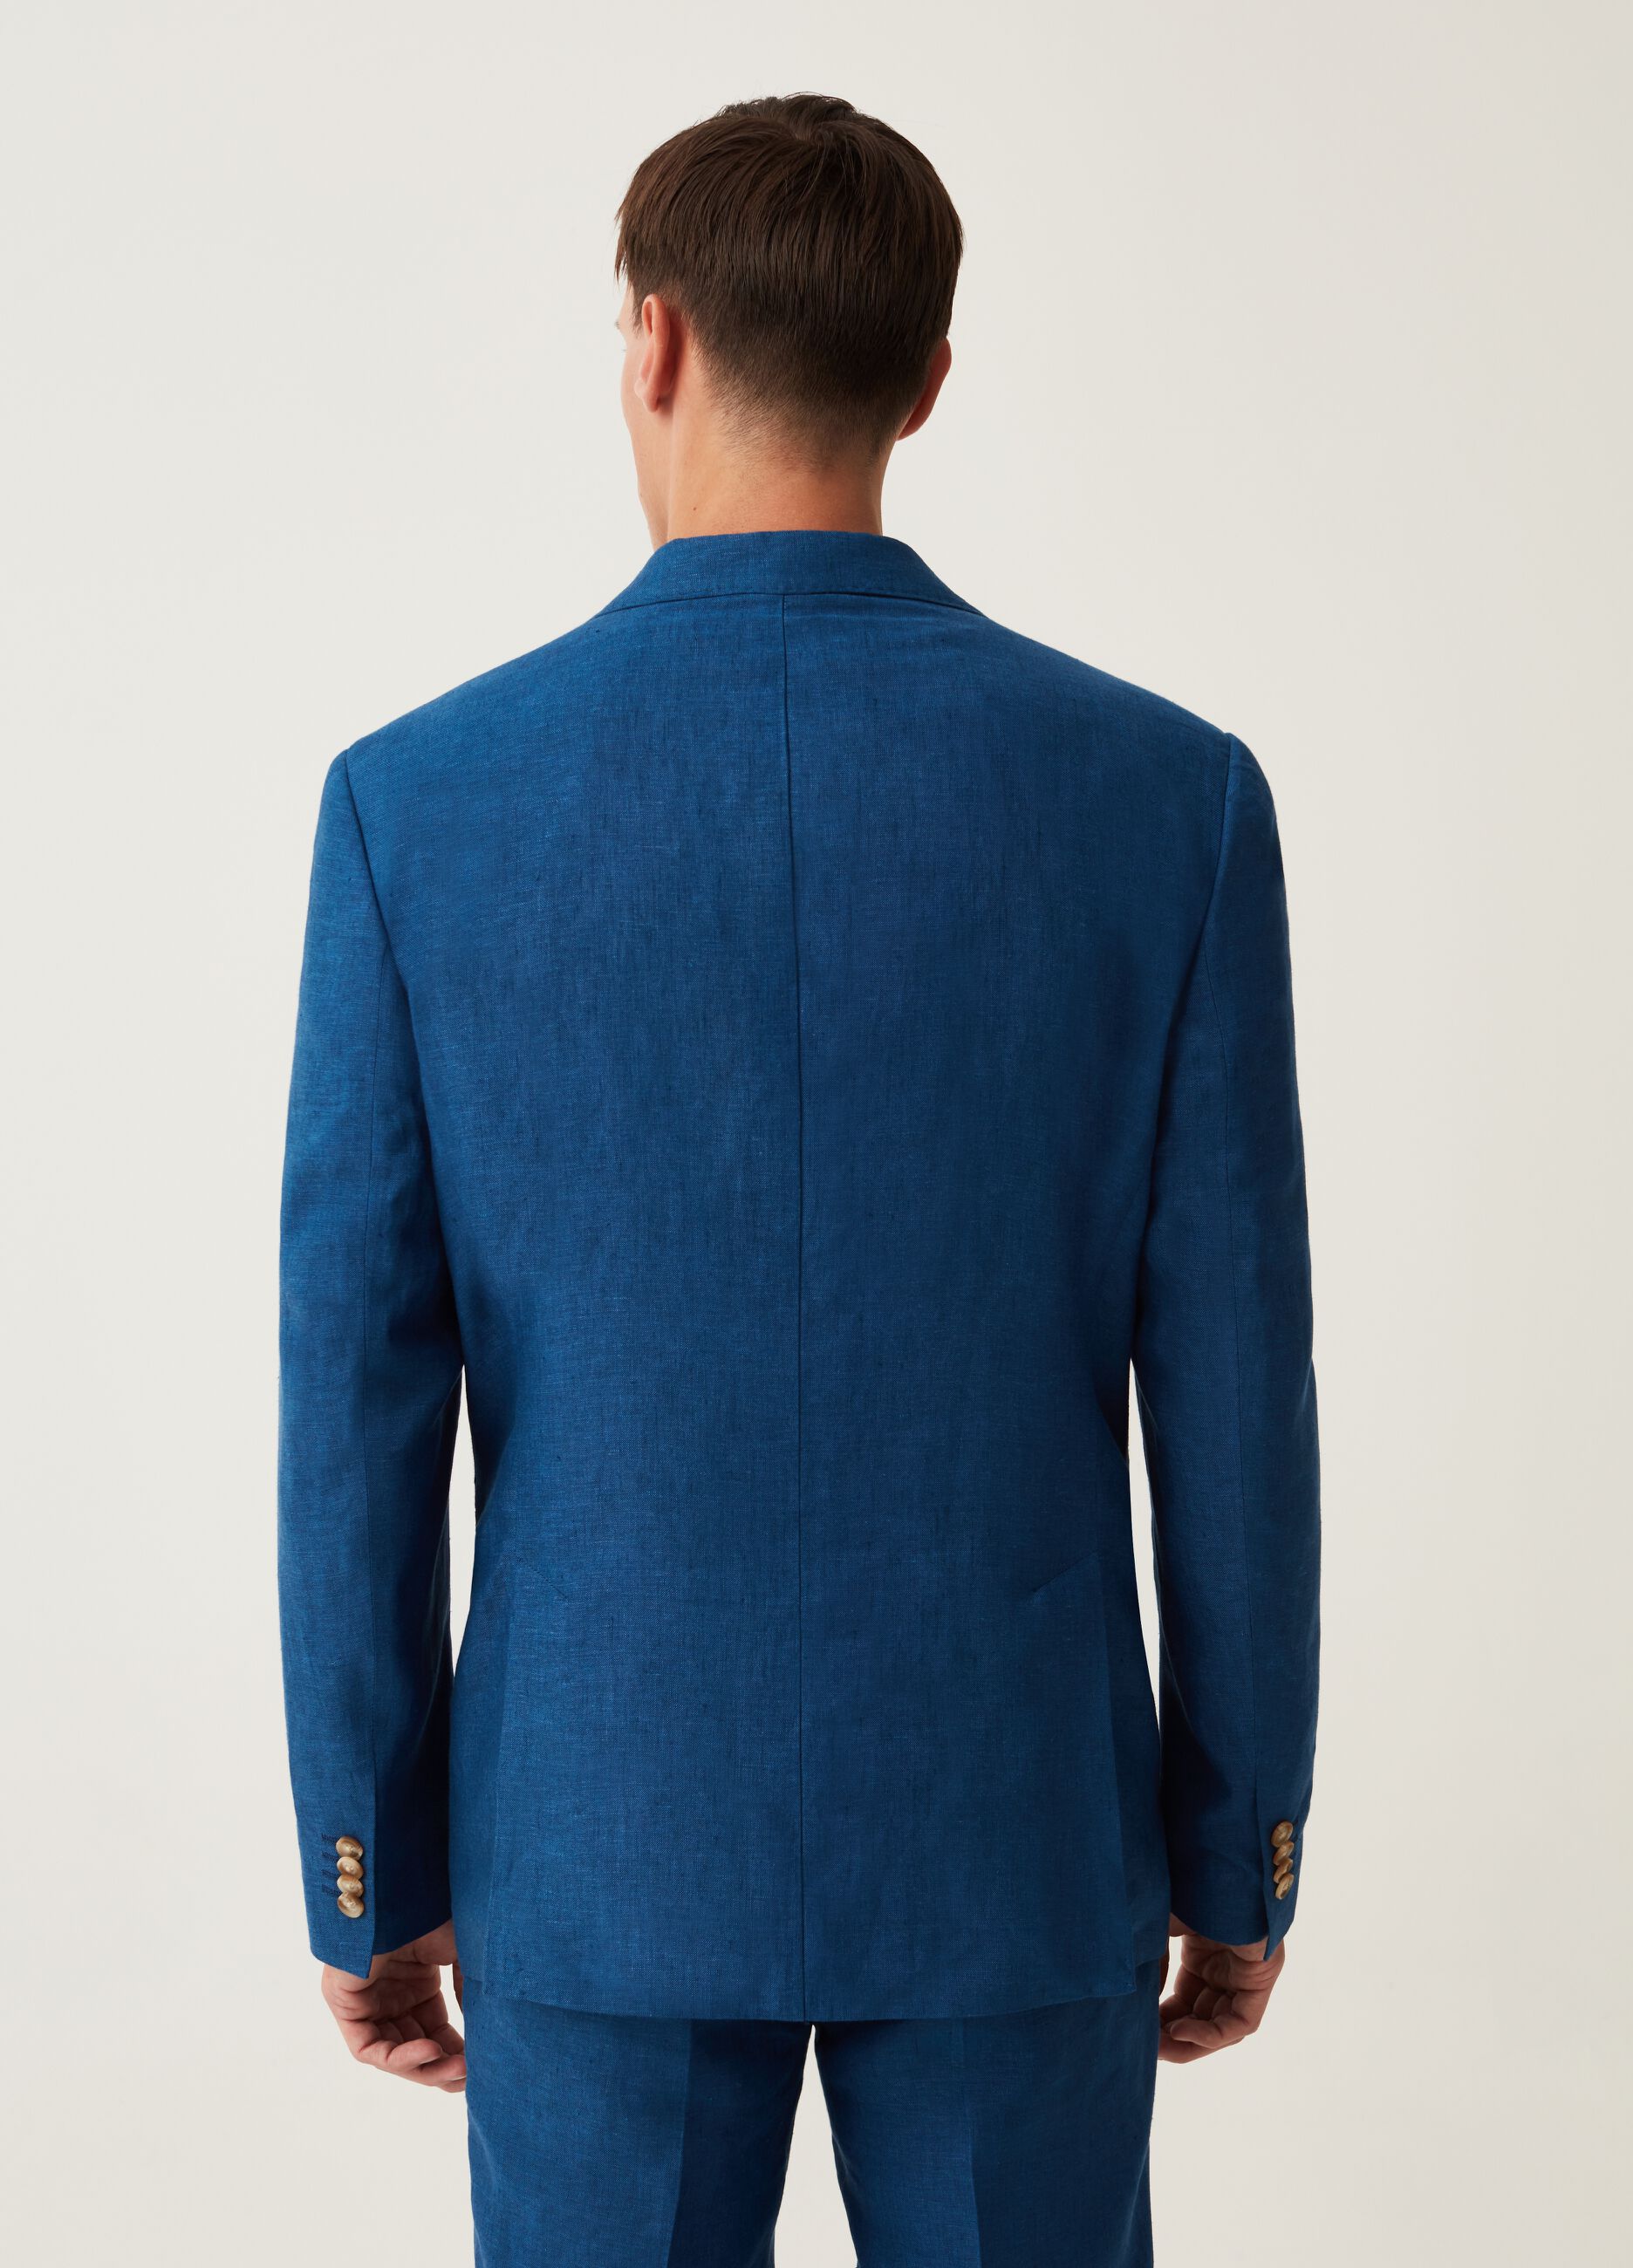 Slim-fit blazer in bluette yarn-dyed linen